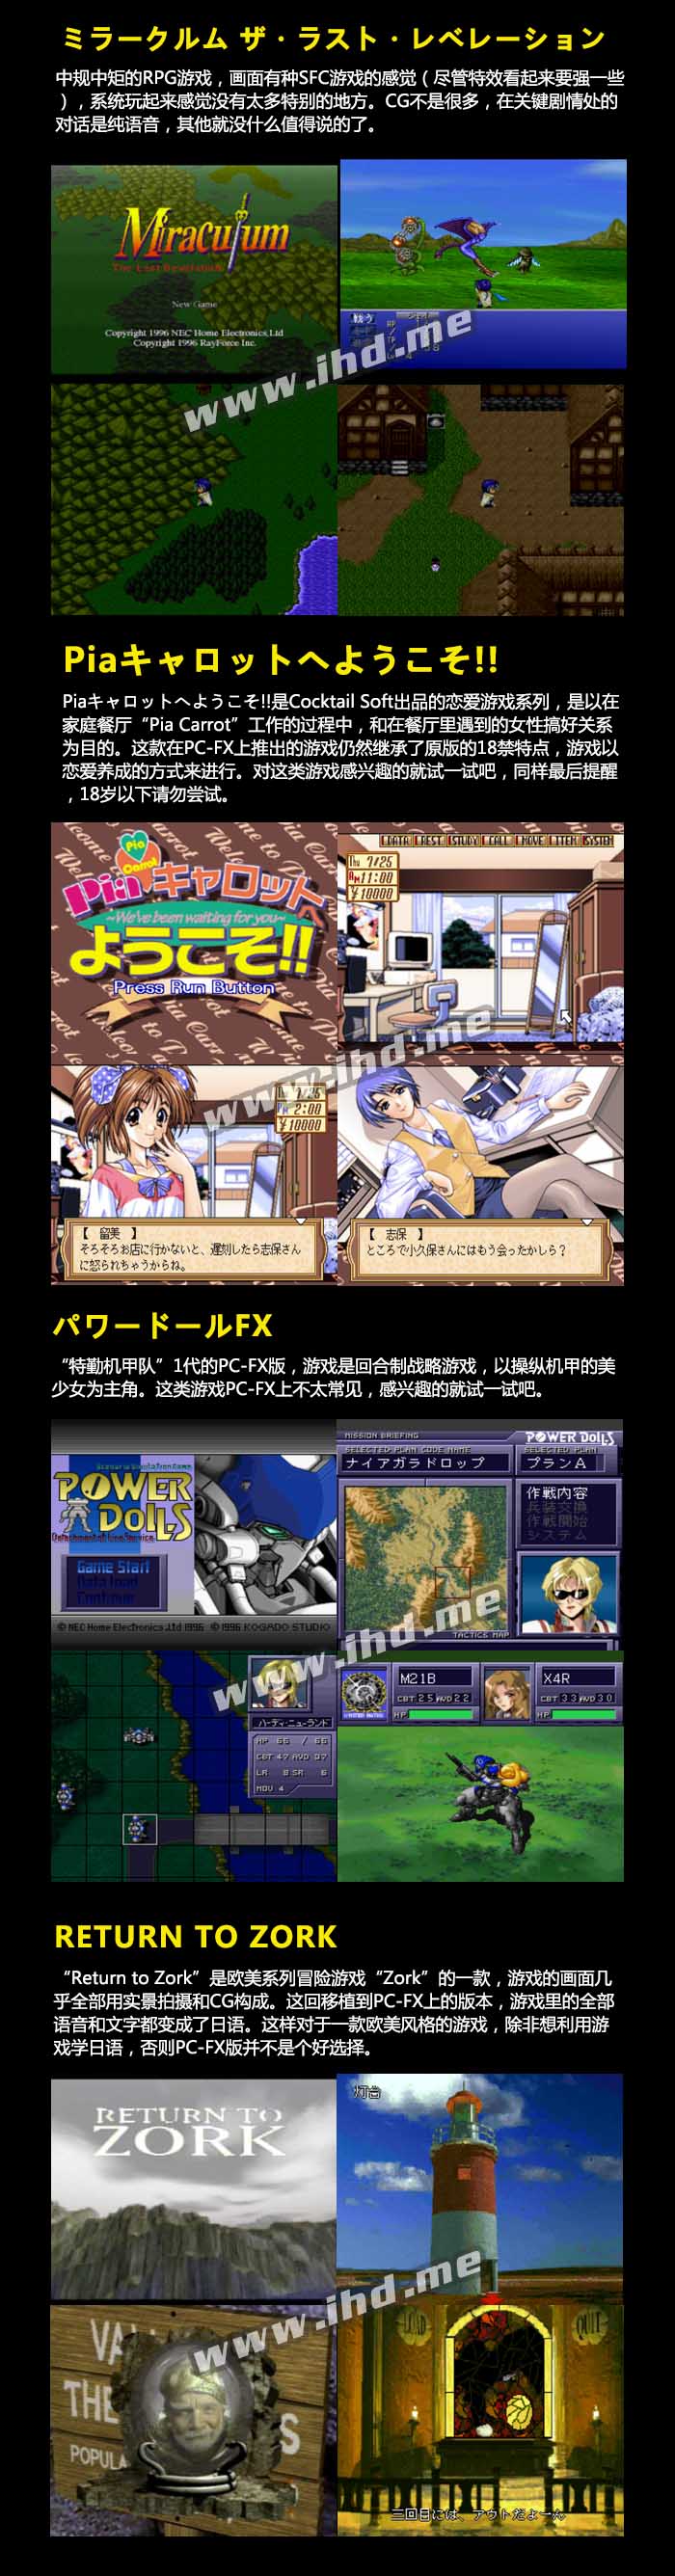 经典怀旧NEC PC-FX 游戏合集含模拟器 中文游戏目录 介绍图片